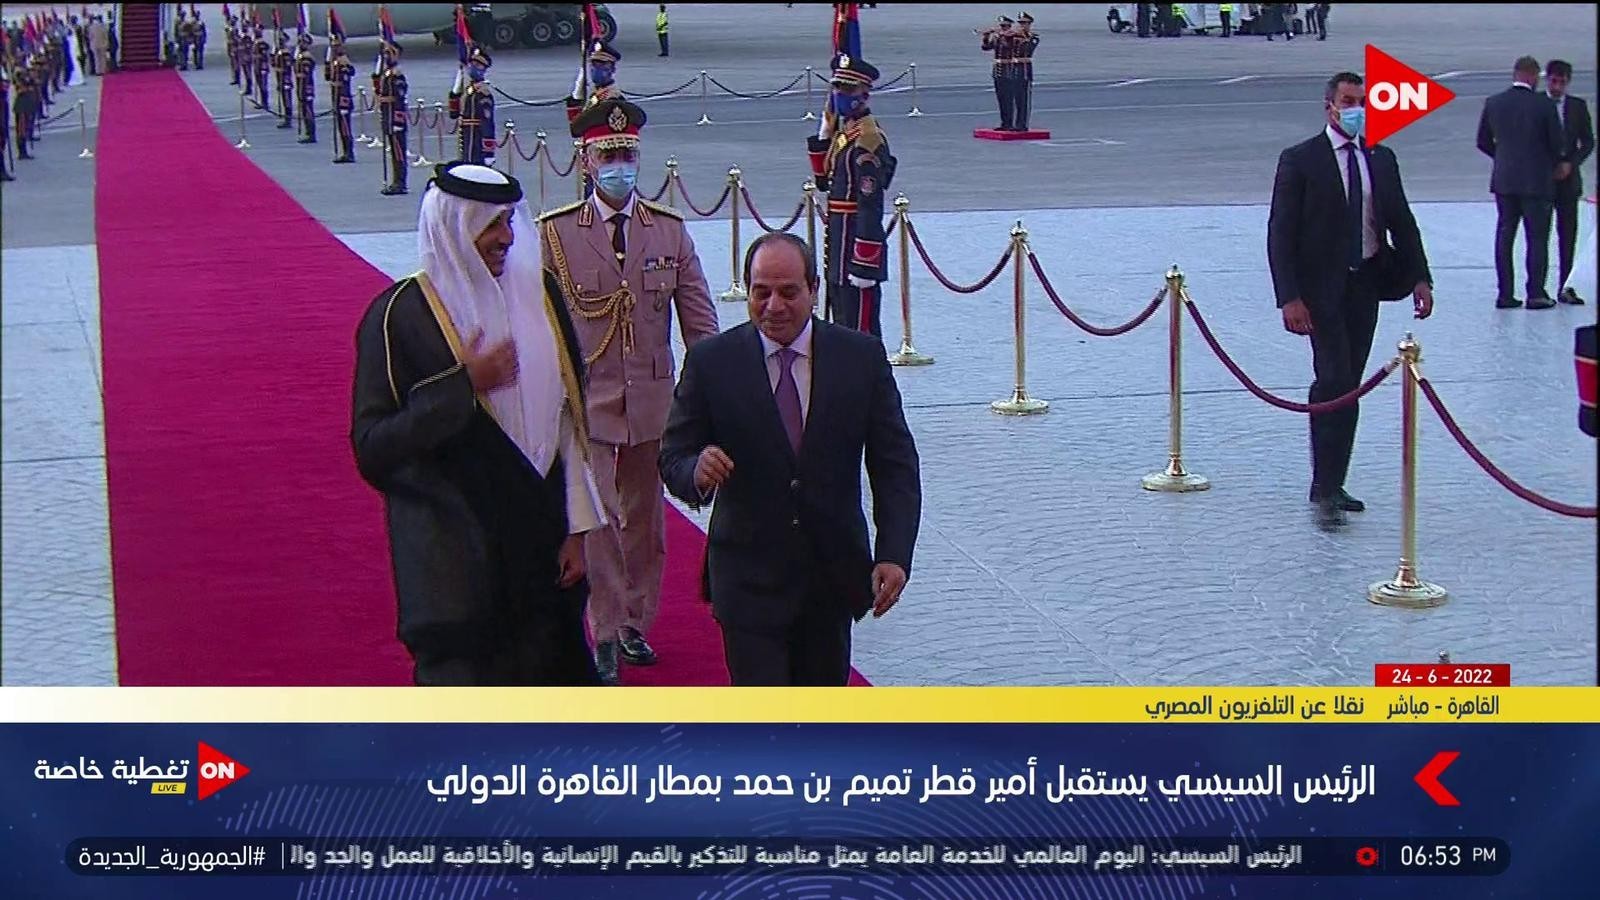 بعد 7 سنوات من الغياب.. الرئيس المصري يستقبل أمير قطر